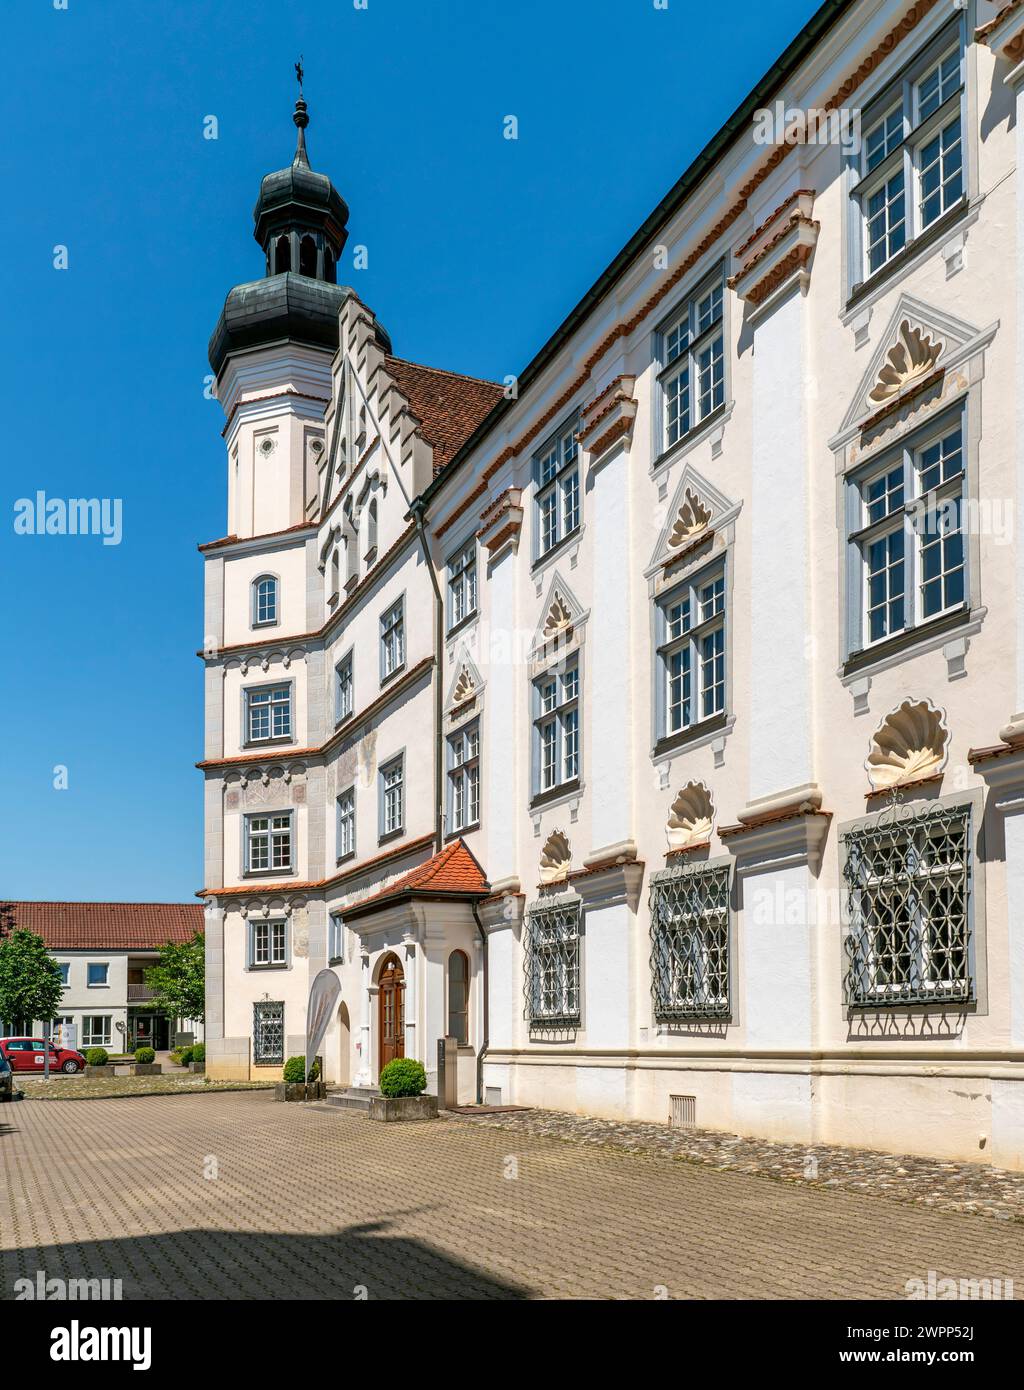 Die Reichsabtei Rot an der Rot im Landkreis Biberach war eines der ersten Prämonstratenser-Klöster in Oberschwaben. Das Kloster wurde vermutlich 1126 von Hemma von Wildenberg als Doppelkloster gegründet. Stockfoto